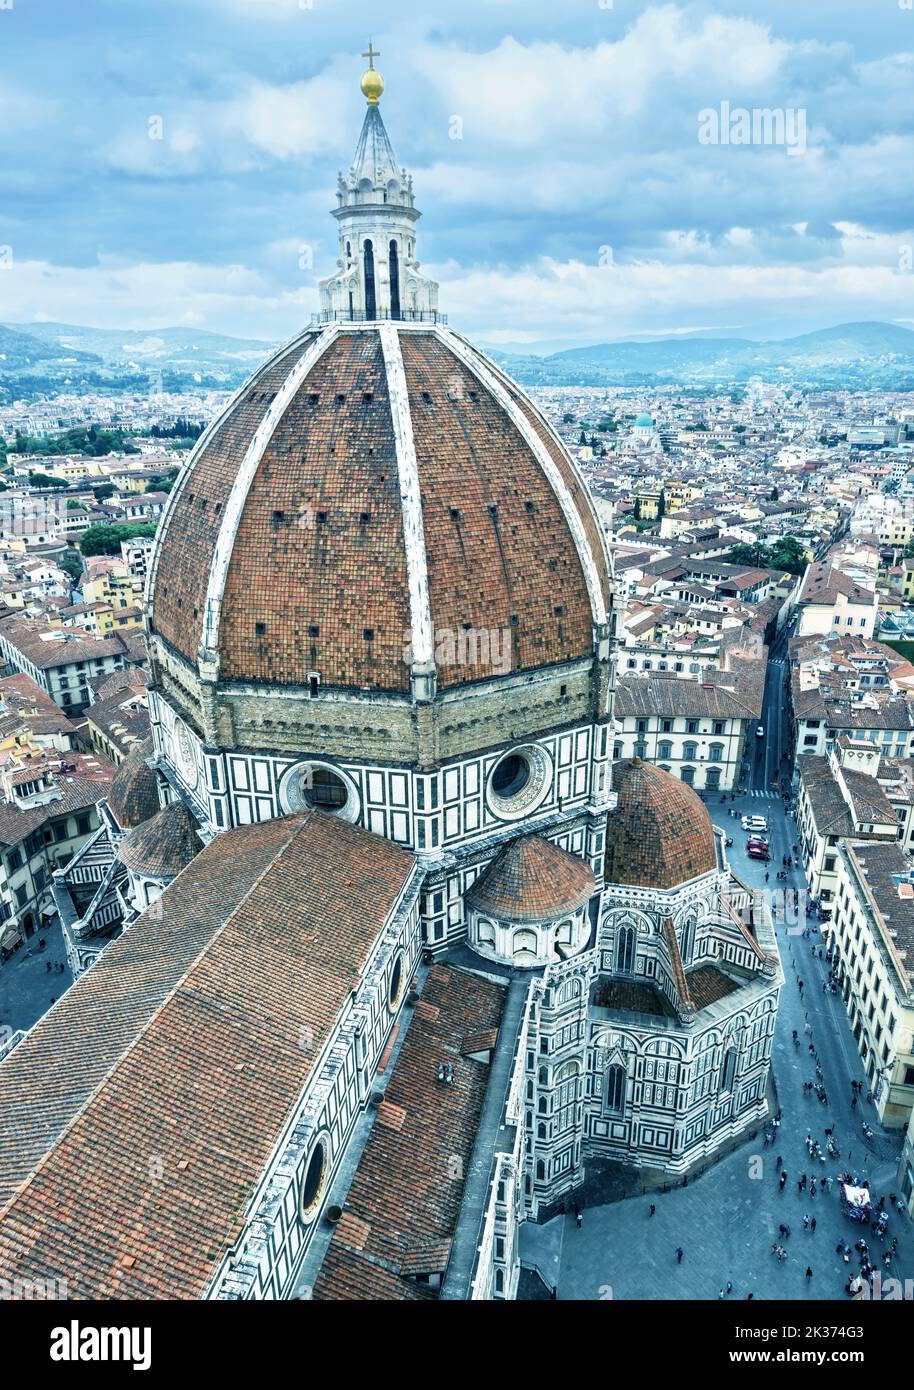 Florence en hiver, Italie, Europe. Vue sur le Duomo ou la basilique de Santa Maria del Fiore (Sainte-Marie-de-fleurs), point de repère de la ville de Florence. Décor de F Banque D'Images